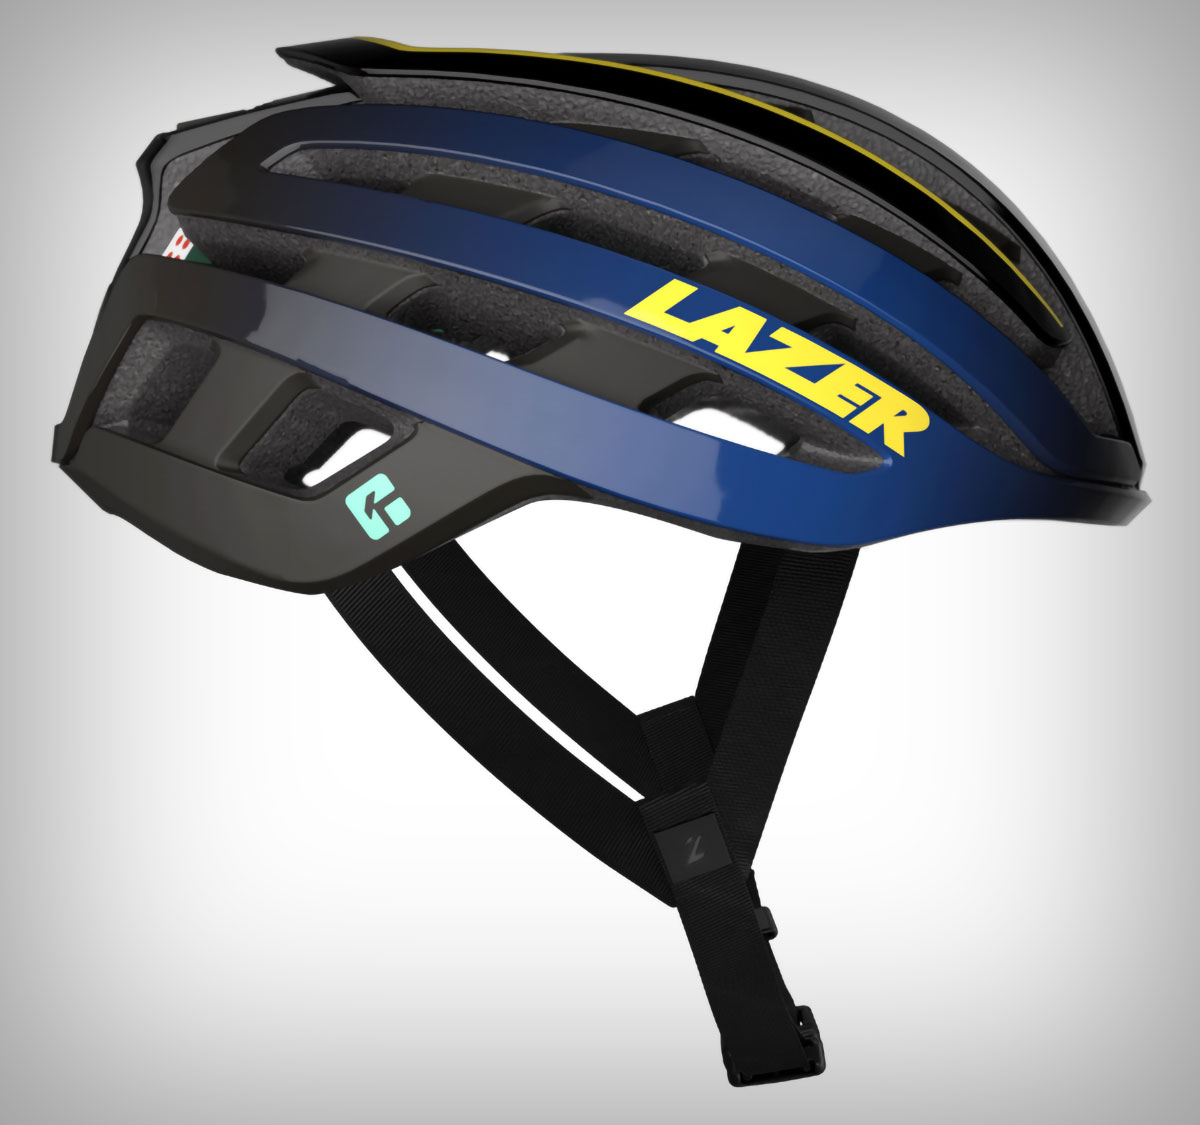 El Lazer Z1 KinetiCore estrena una versión especial decorada con los colores del Tour de Francia